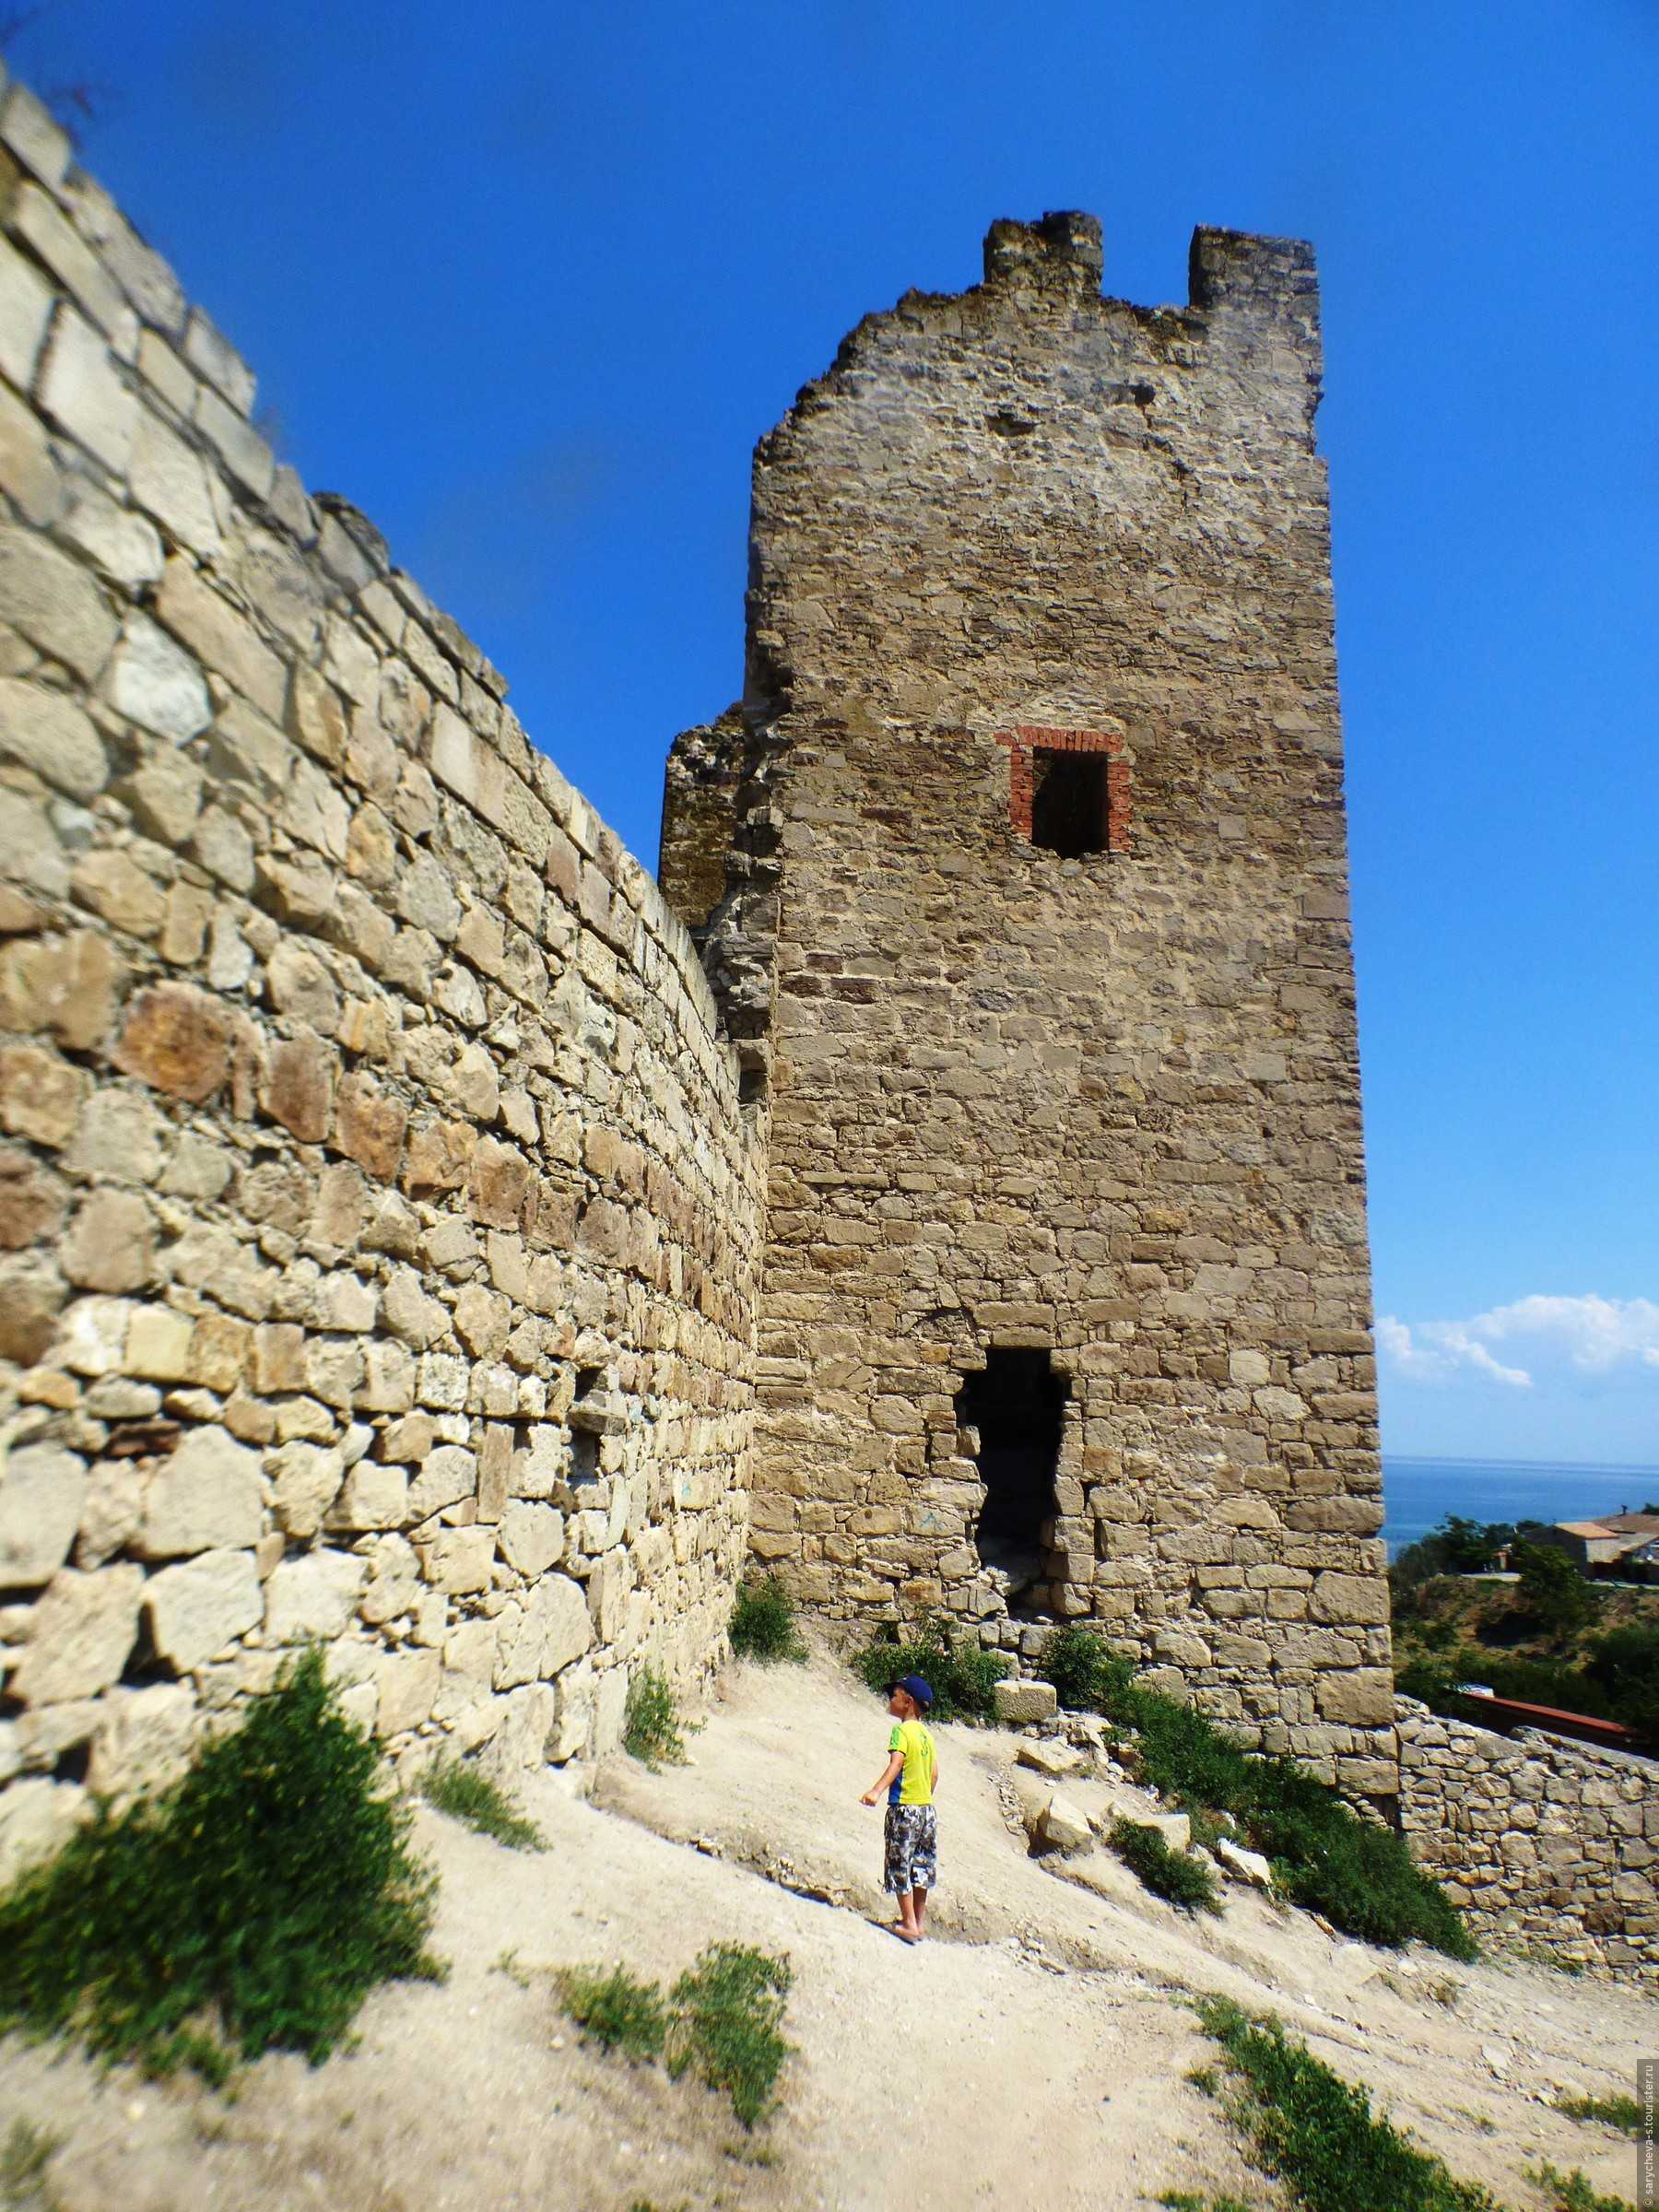 Генуэзская крепость феодосии: экскурсии, экспозиции, точный адрес, телефон